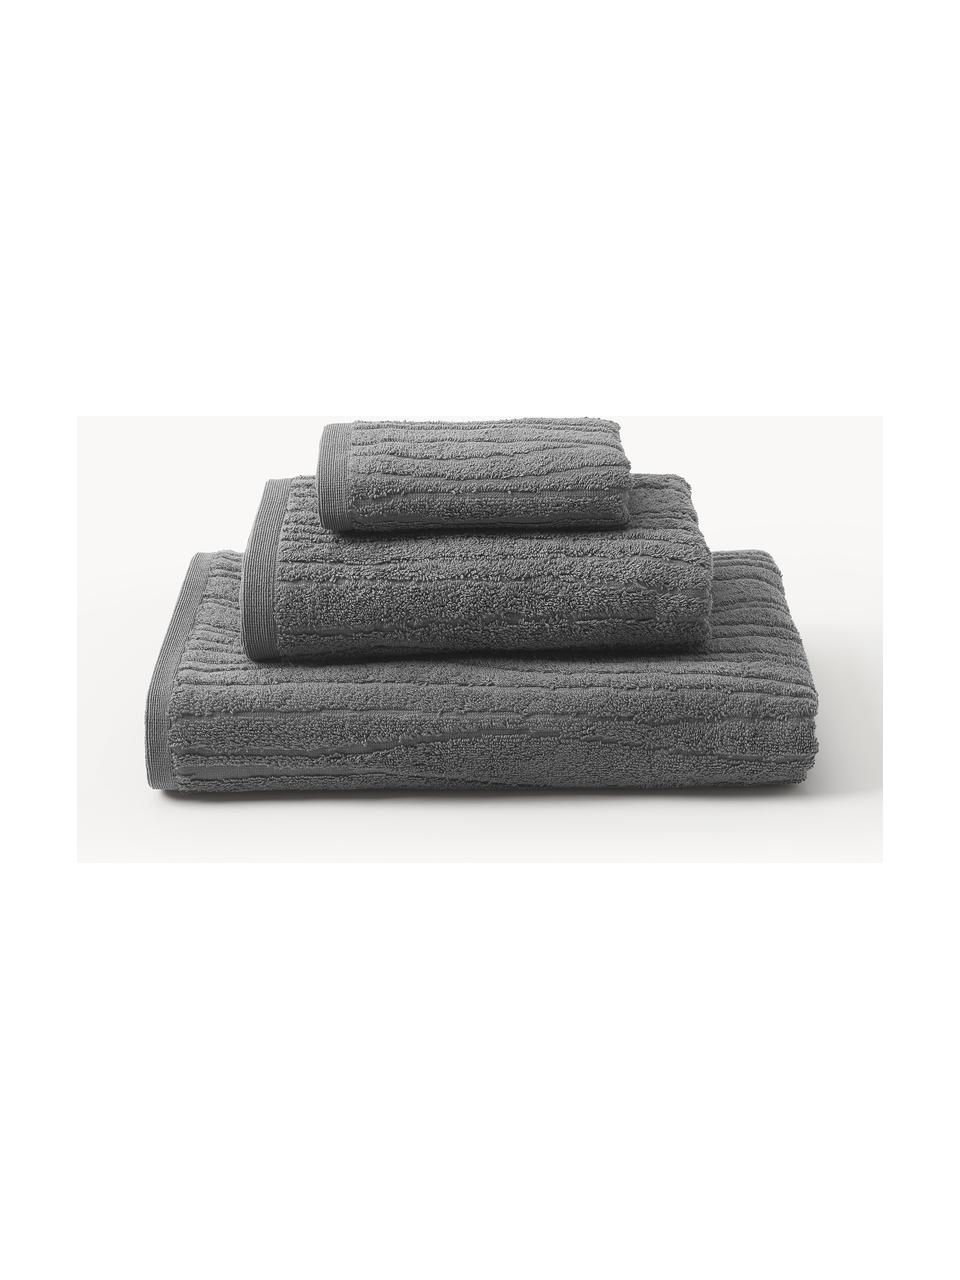 Handtuch-Set Audrina aus Baumwolle, in verschiedenen Setgrößen, Dunkelgrau, 3er-Set (Gästehandtuch, Handtuch & Duschtuch)